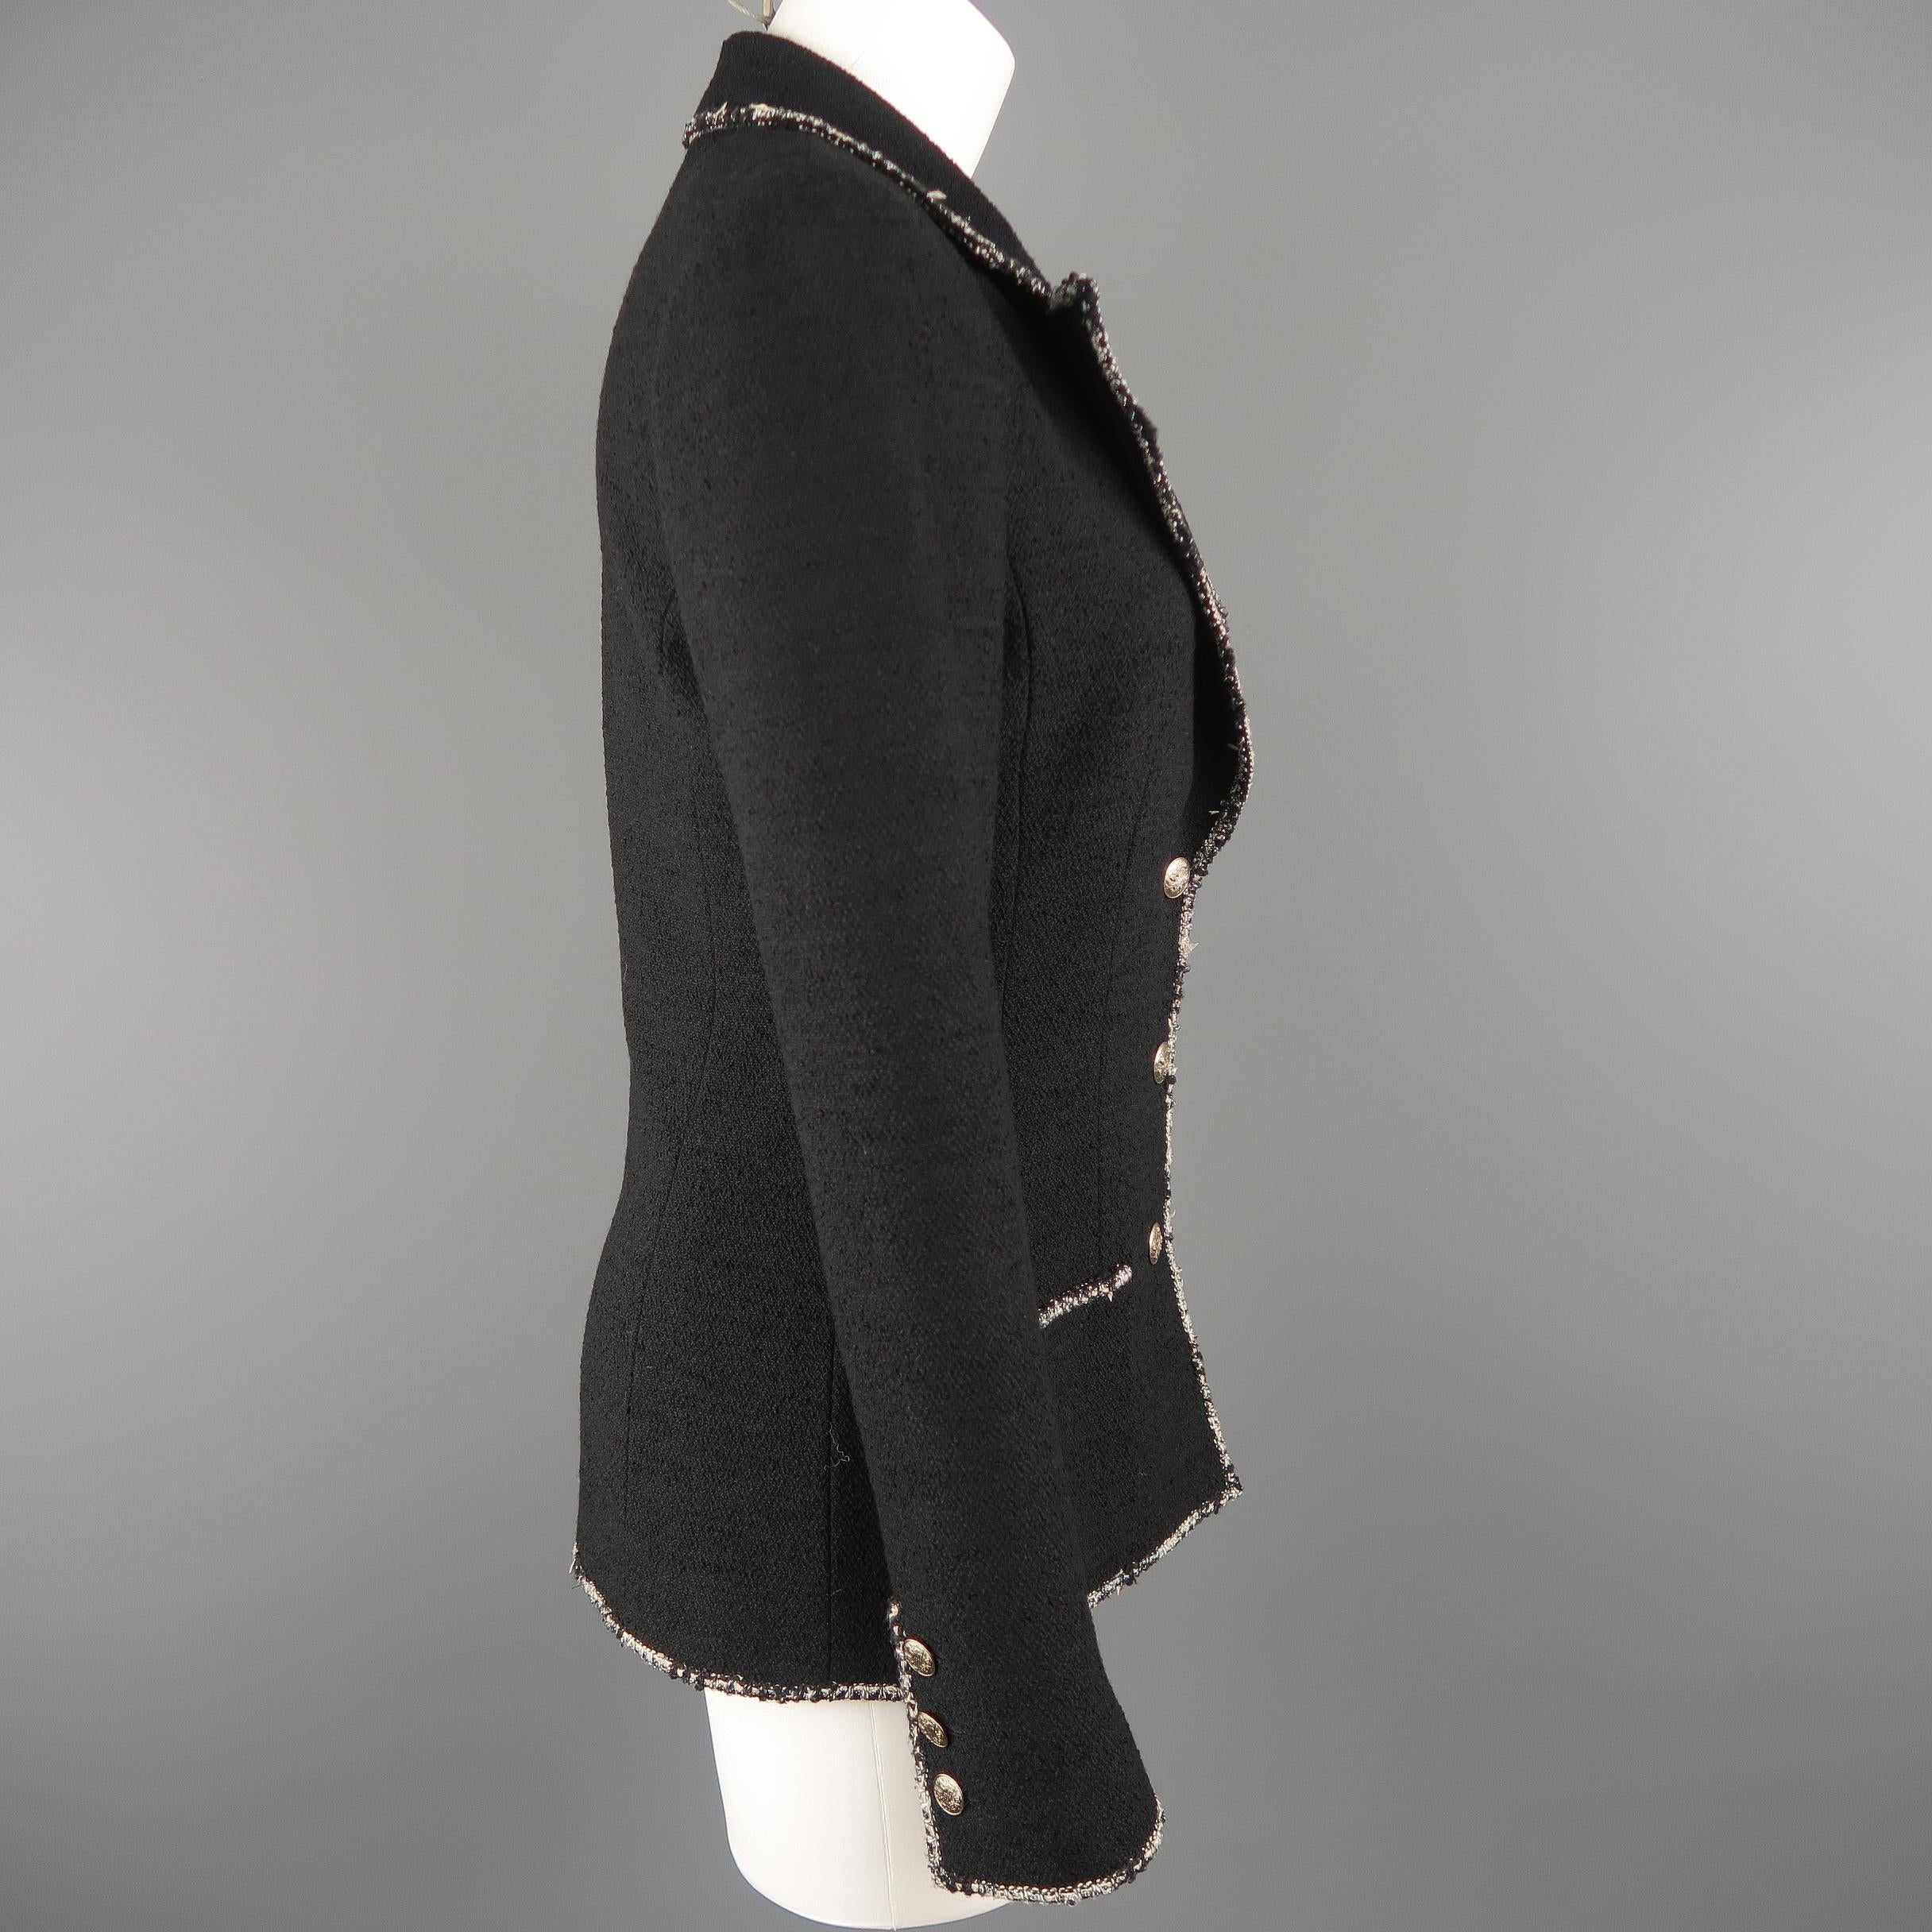 CHANEL Size 6 Black Wool Blend Boucle Trim No. 5 Blazer Jacket 2